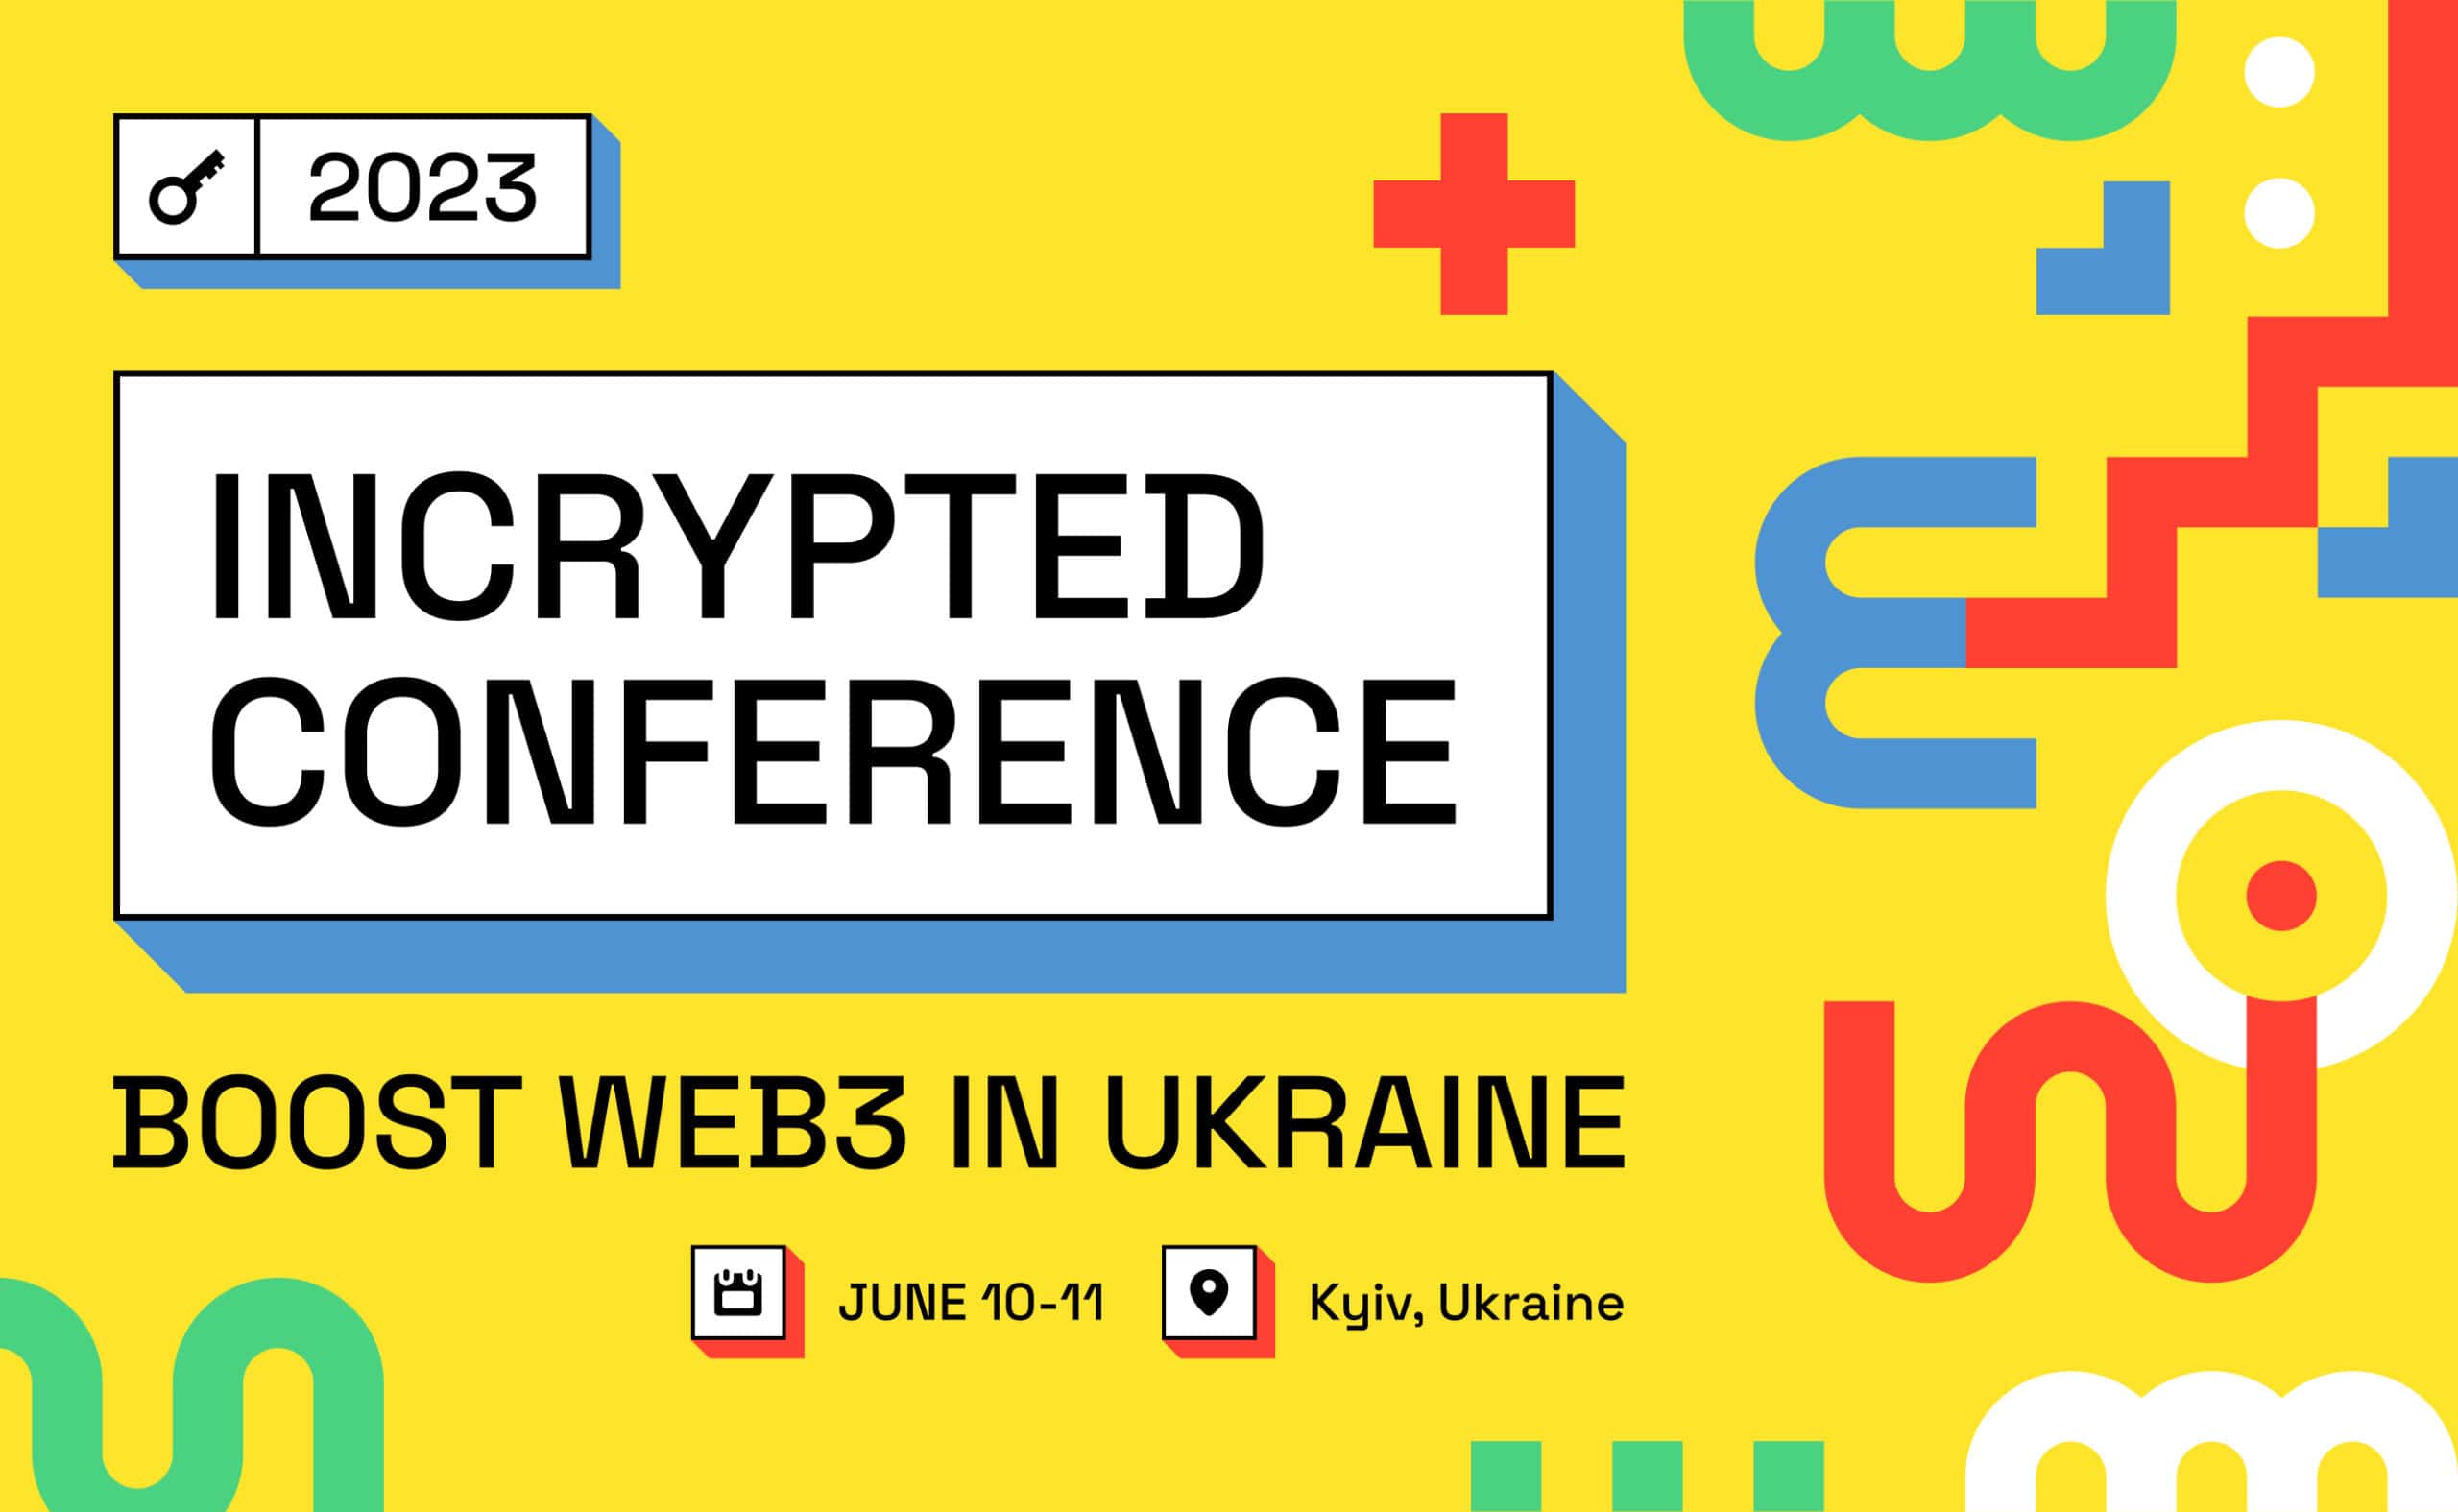 Стартовала продажа билетов на Incrypted Conference 2023 — главный криптоивент года в Украине. Заглавный коллаж новости.